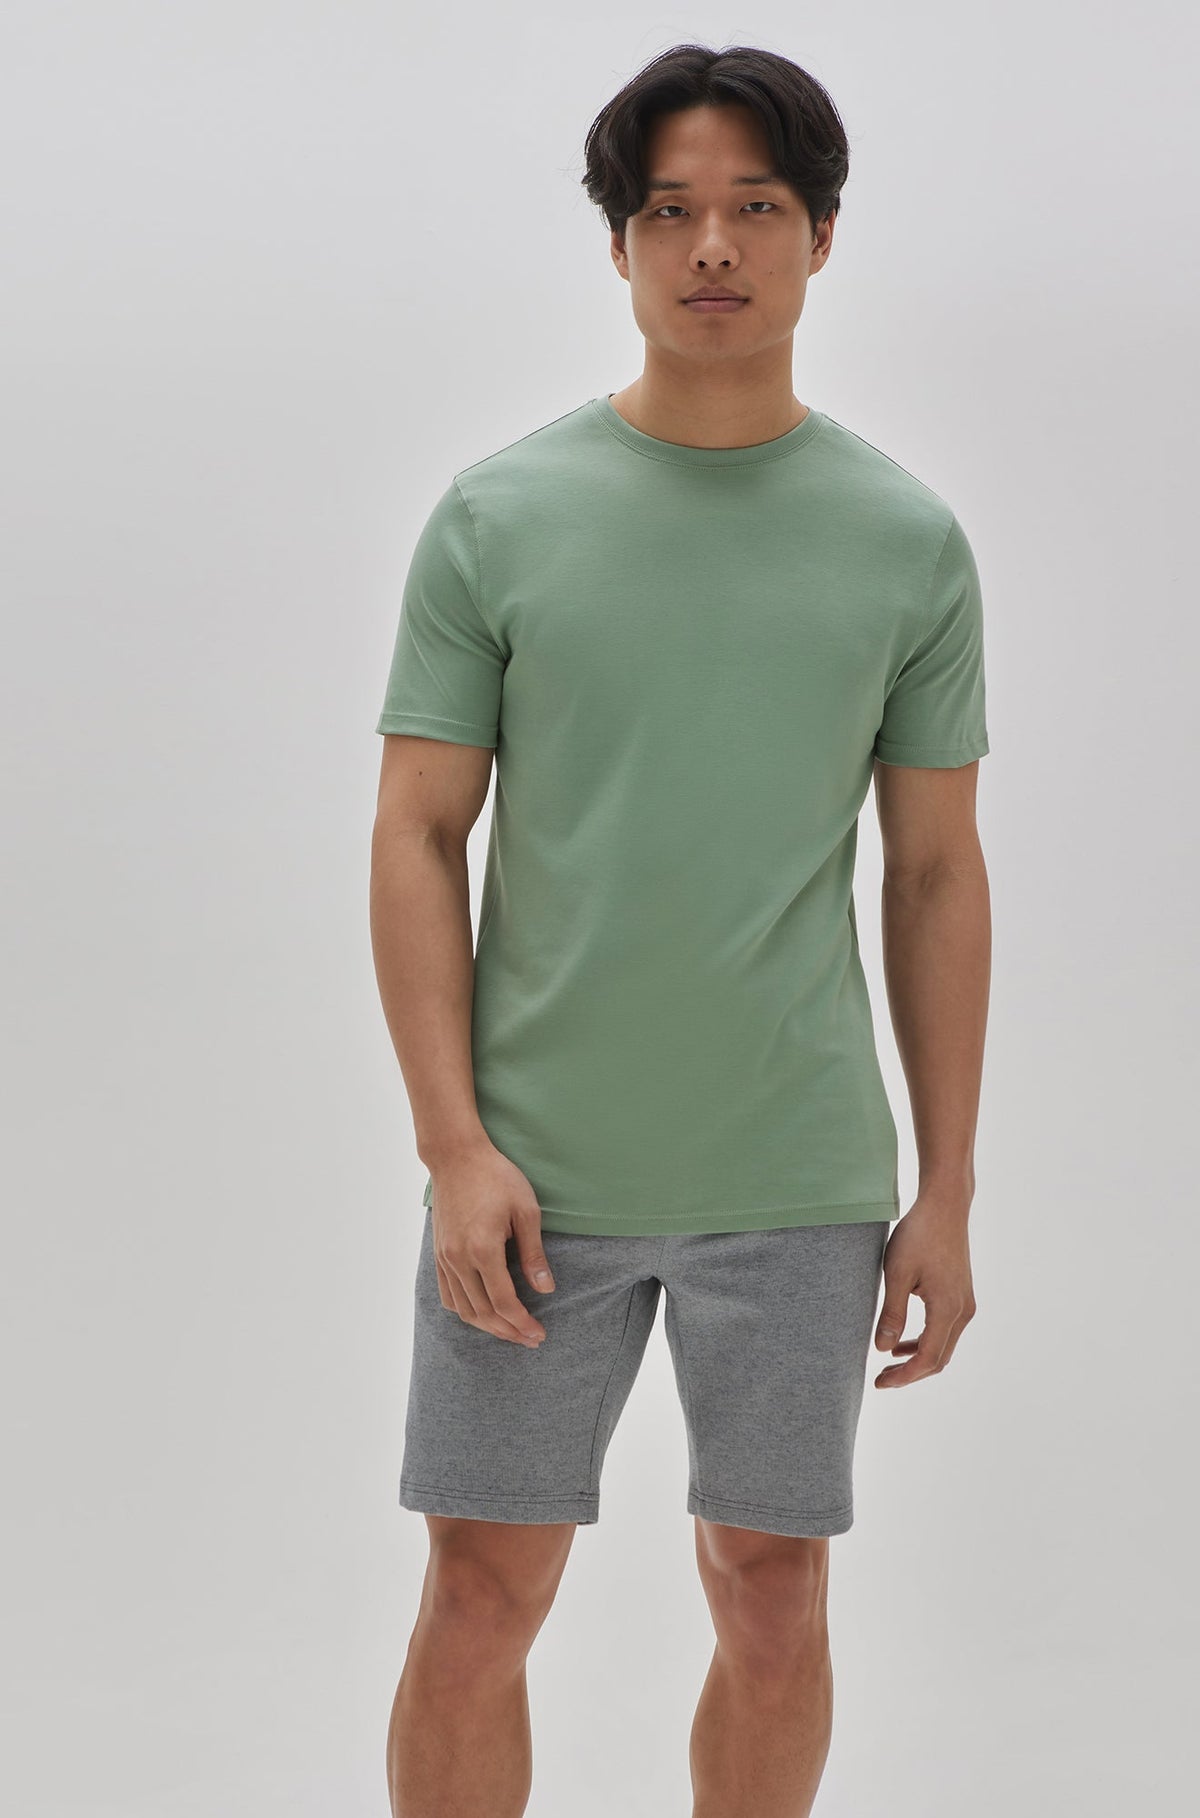 T-Shirt col rond pour homme par Robert Barakett | 23336/Georgia Baie Verte/Green Bay| Machemise.ca, vêtements mode pour hommes